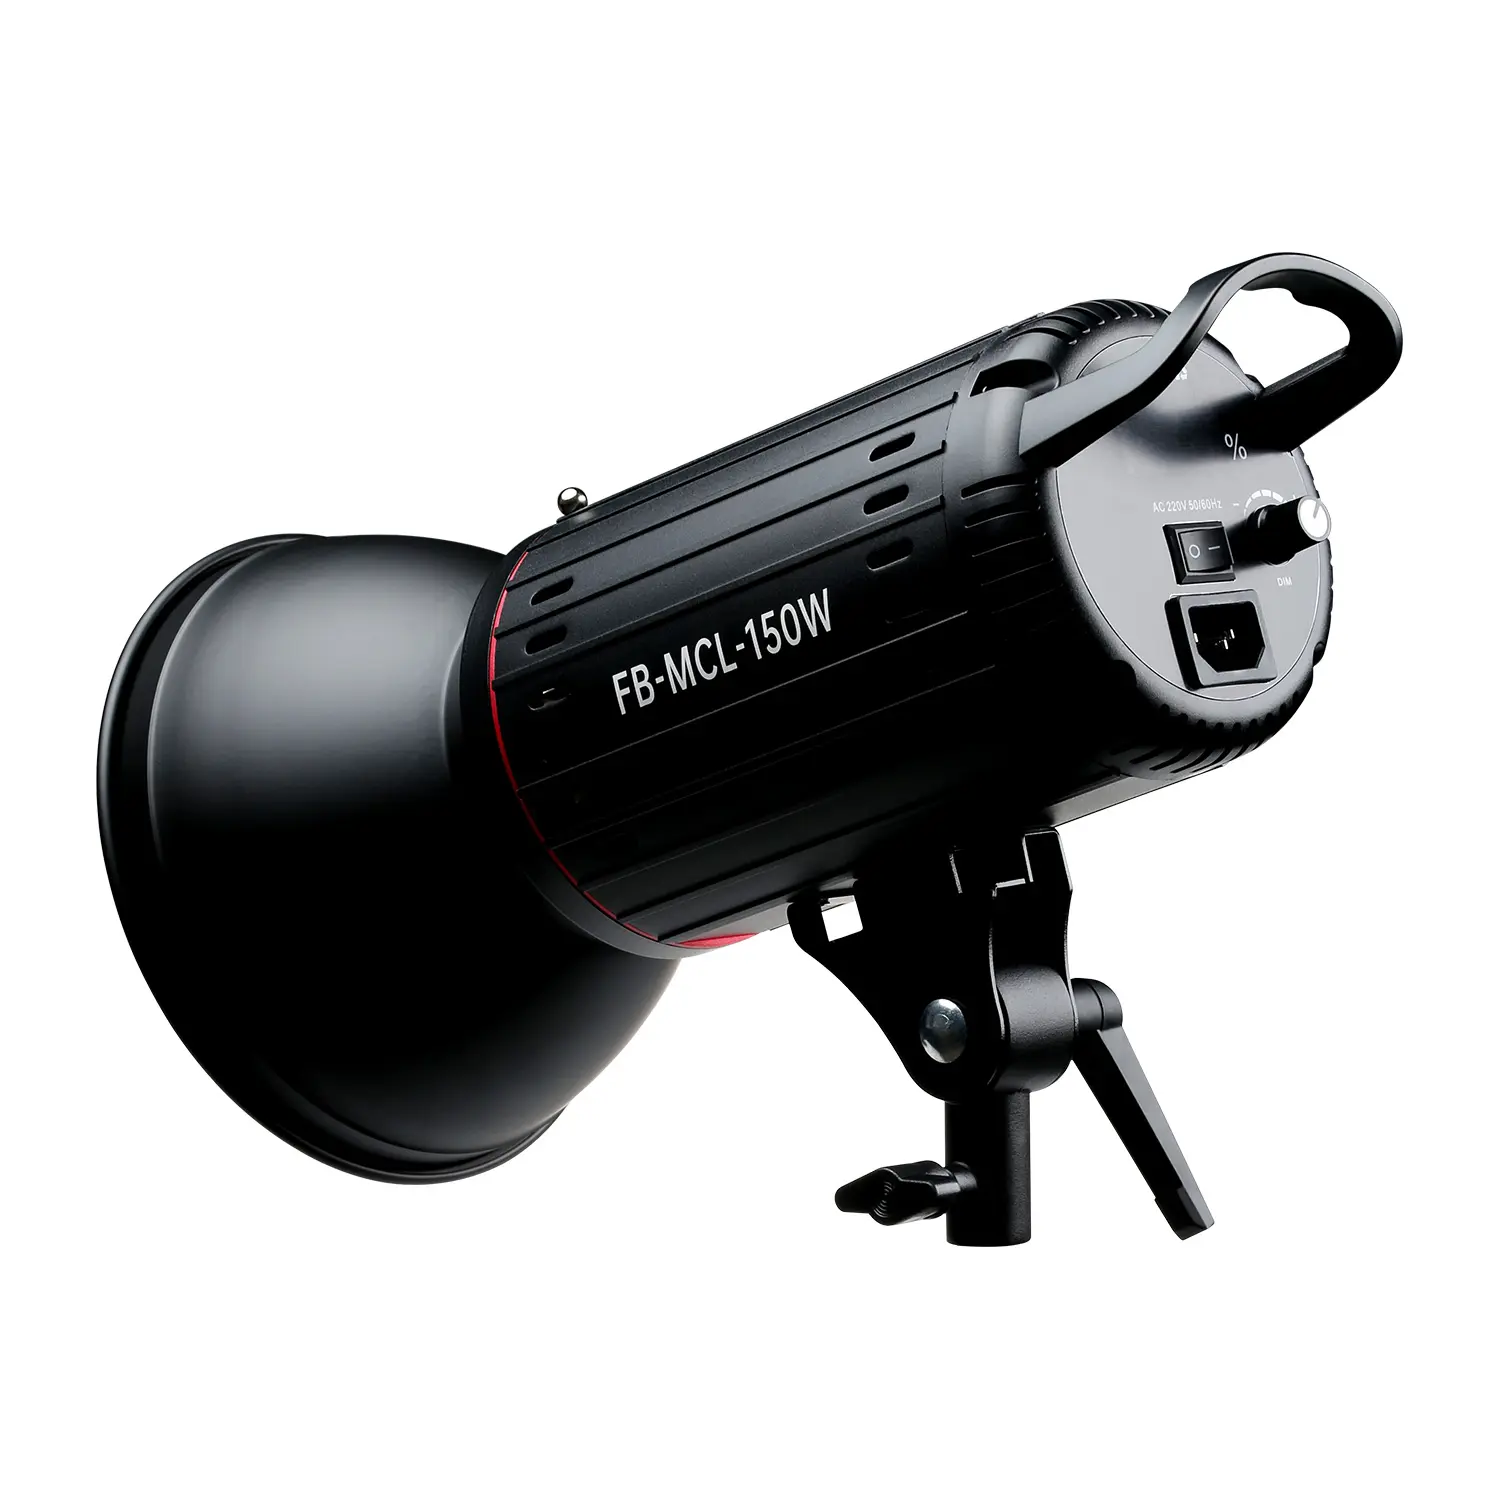 FB-MCL-150W 150W Sunlamp continuo Led Spot Video Light Photo Studio Lighting Equipment per professionisti dell'illuminazione fotografica